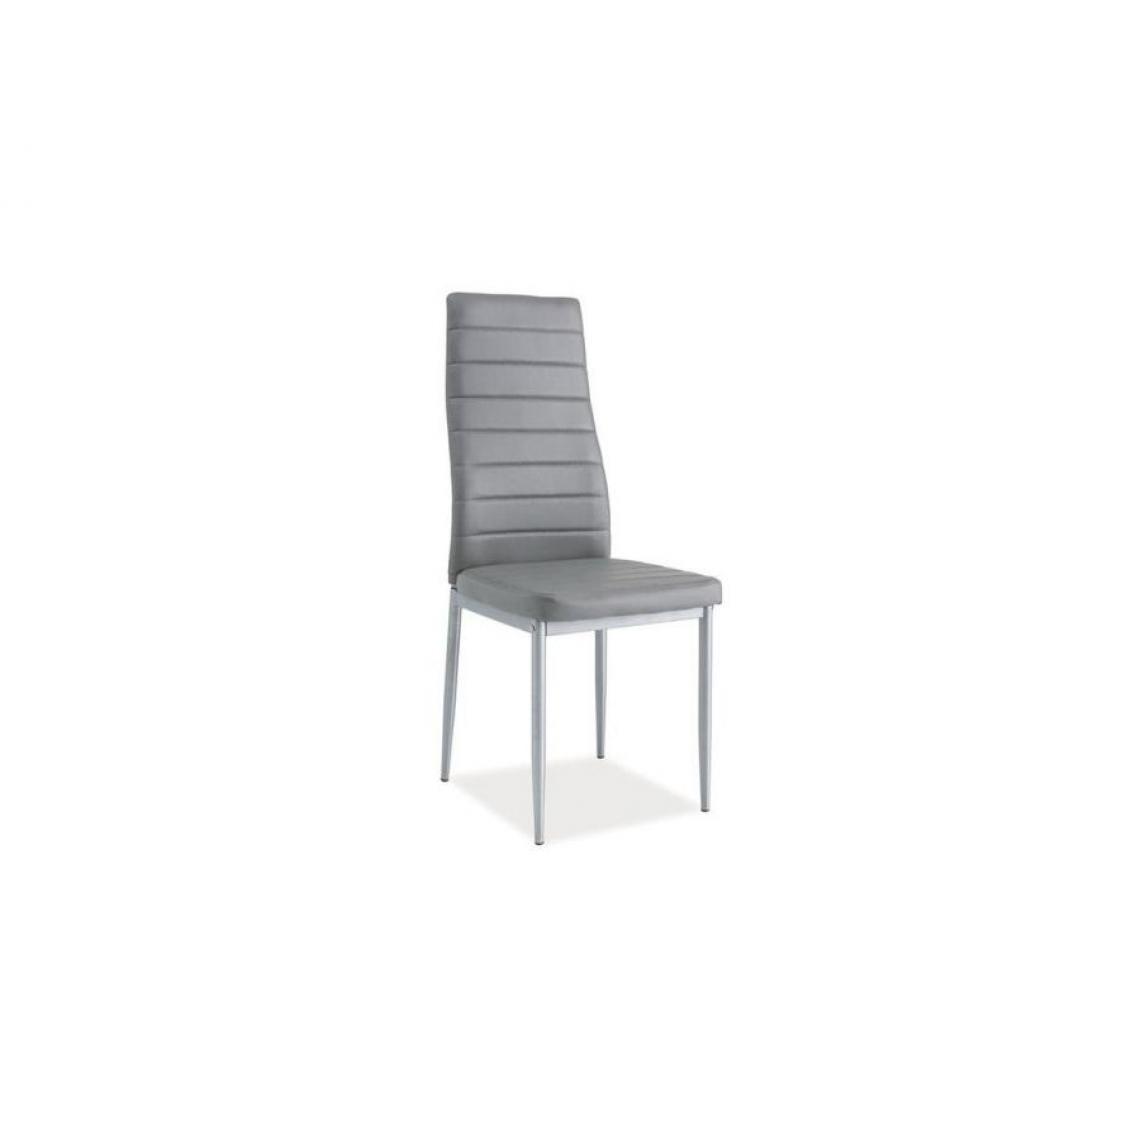 Hucoco - WERI | Chaise minimaliste intérieurs modernes | 96x40x38 cm | Rembourrage cuir écologique | Chaise salon/bureau/salle à manger - Gris - Chaises